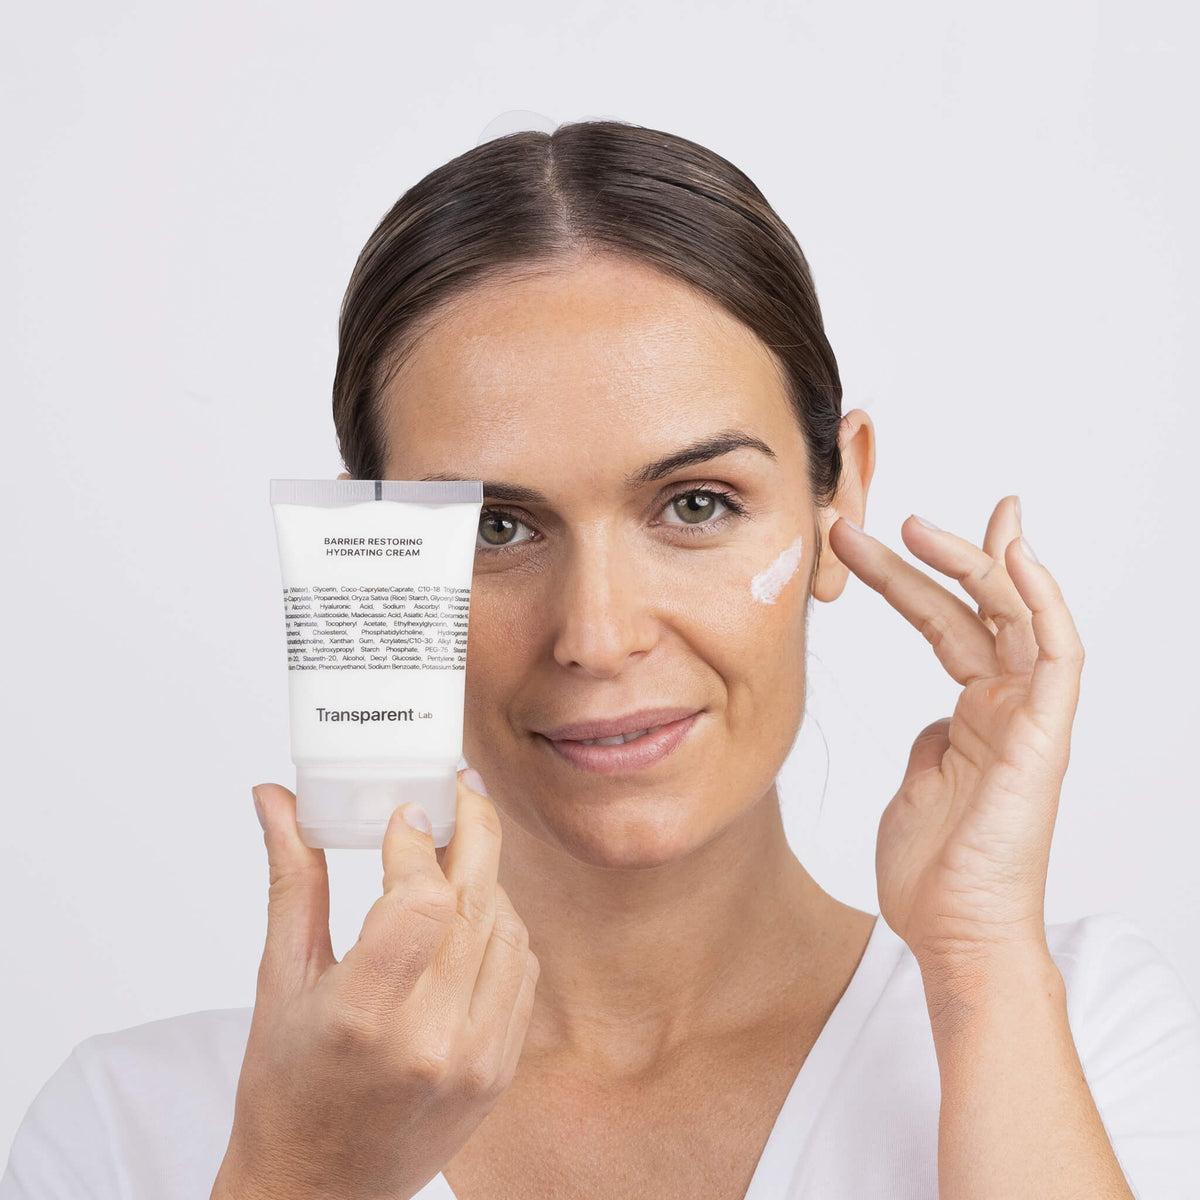 Eine Person, die die Transparent Lab Barrier Restoring Hydrating Cream auf ihr Gesicht aufträgt